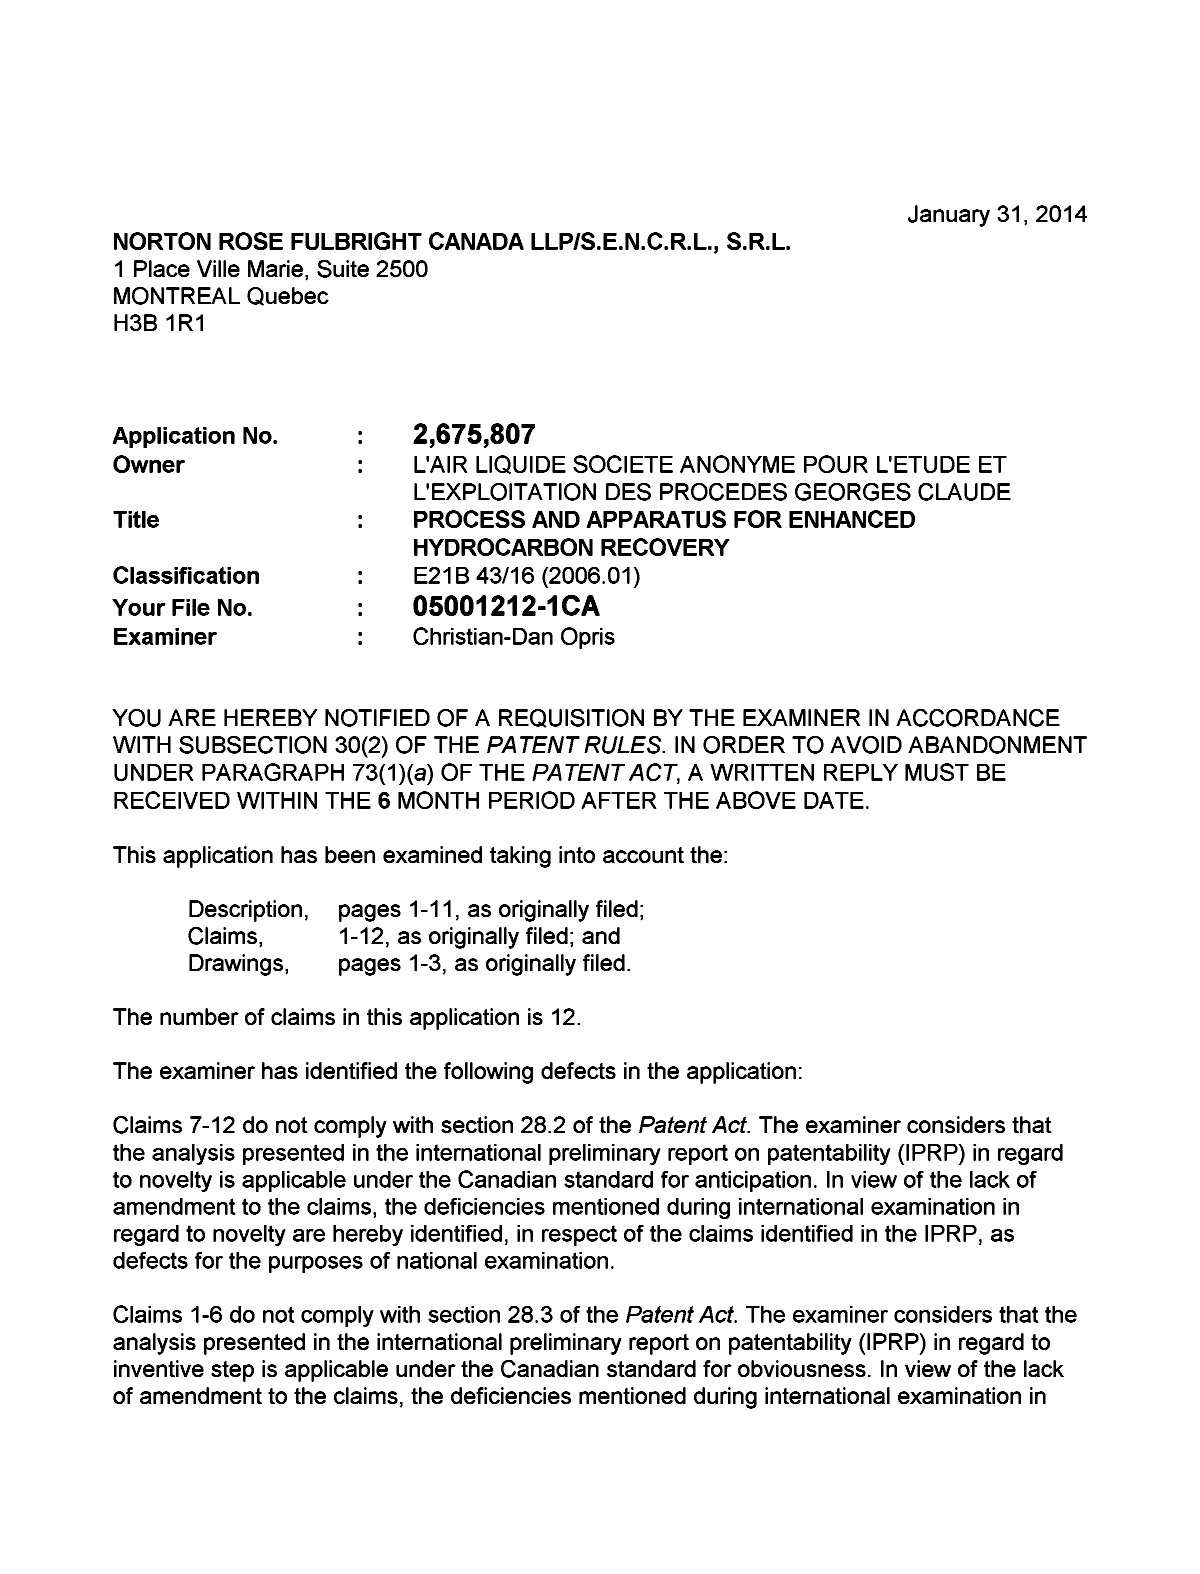 Document de brevet canadien 2675807. Poursuite-Amendment 20140131. Image 1 de 2